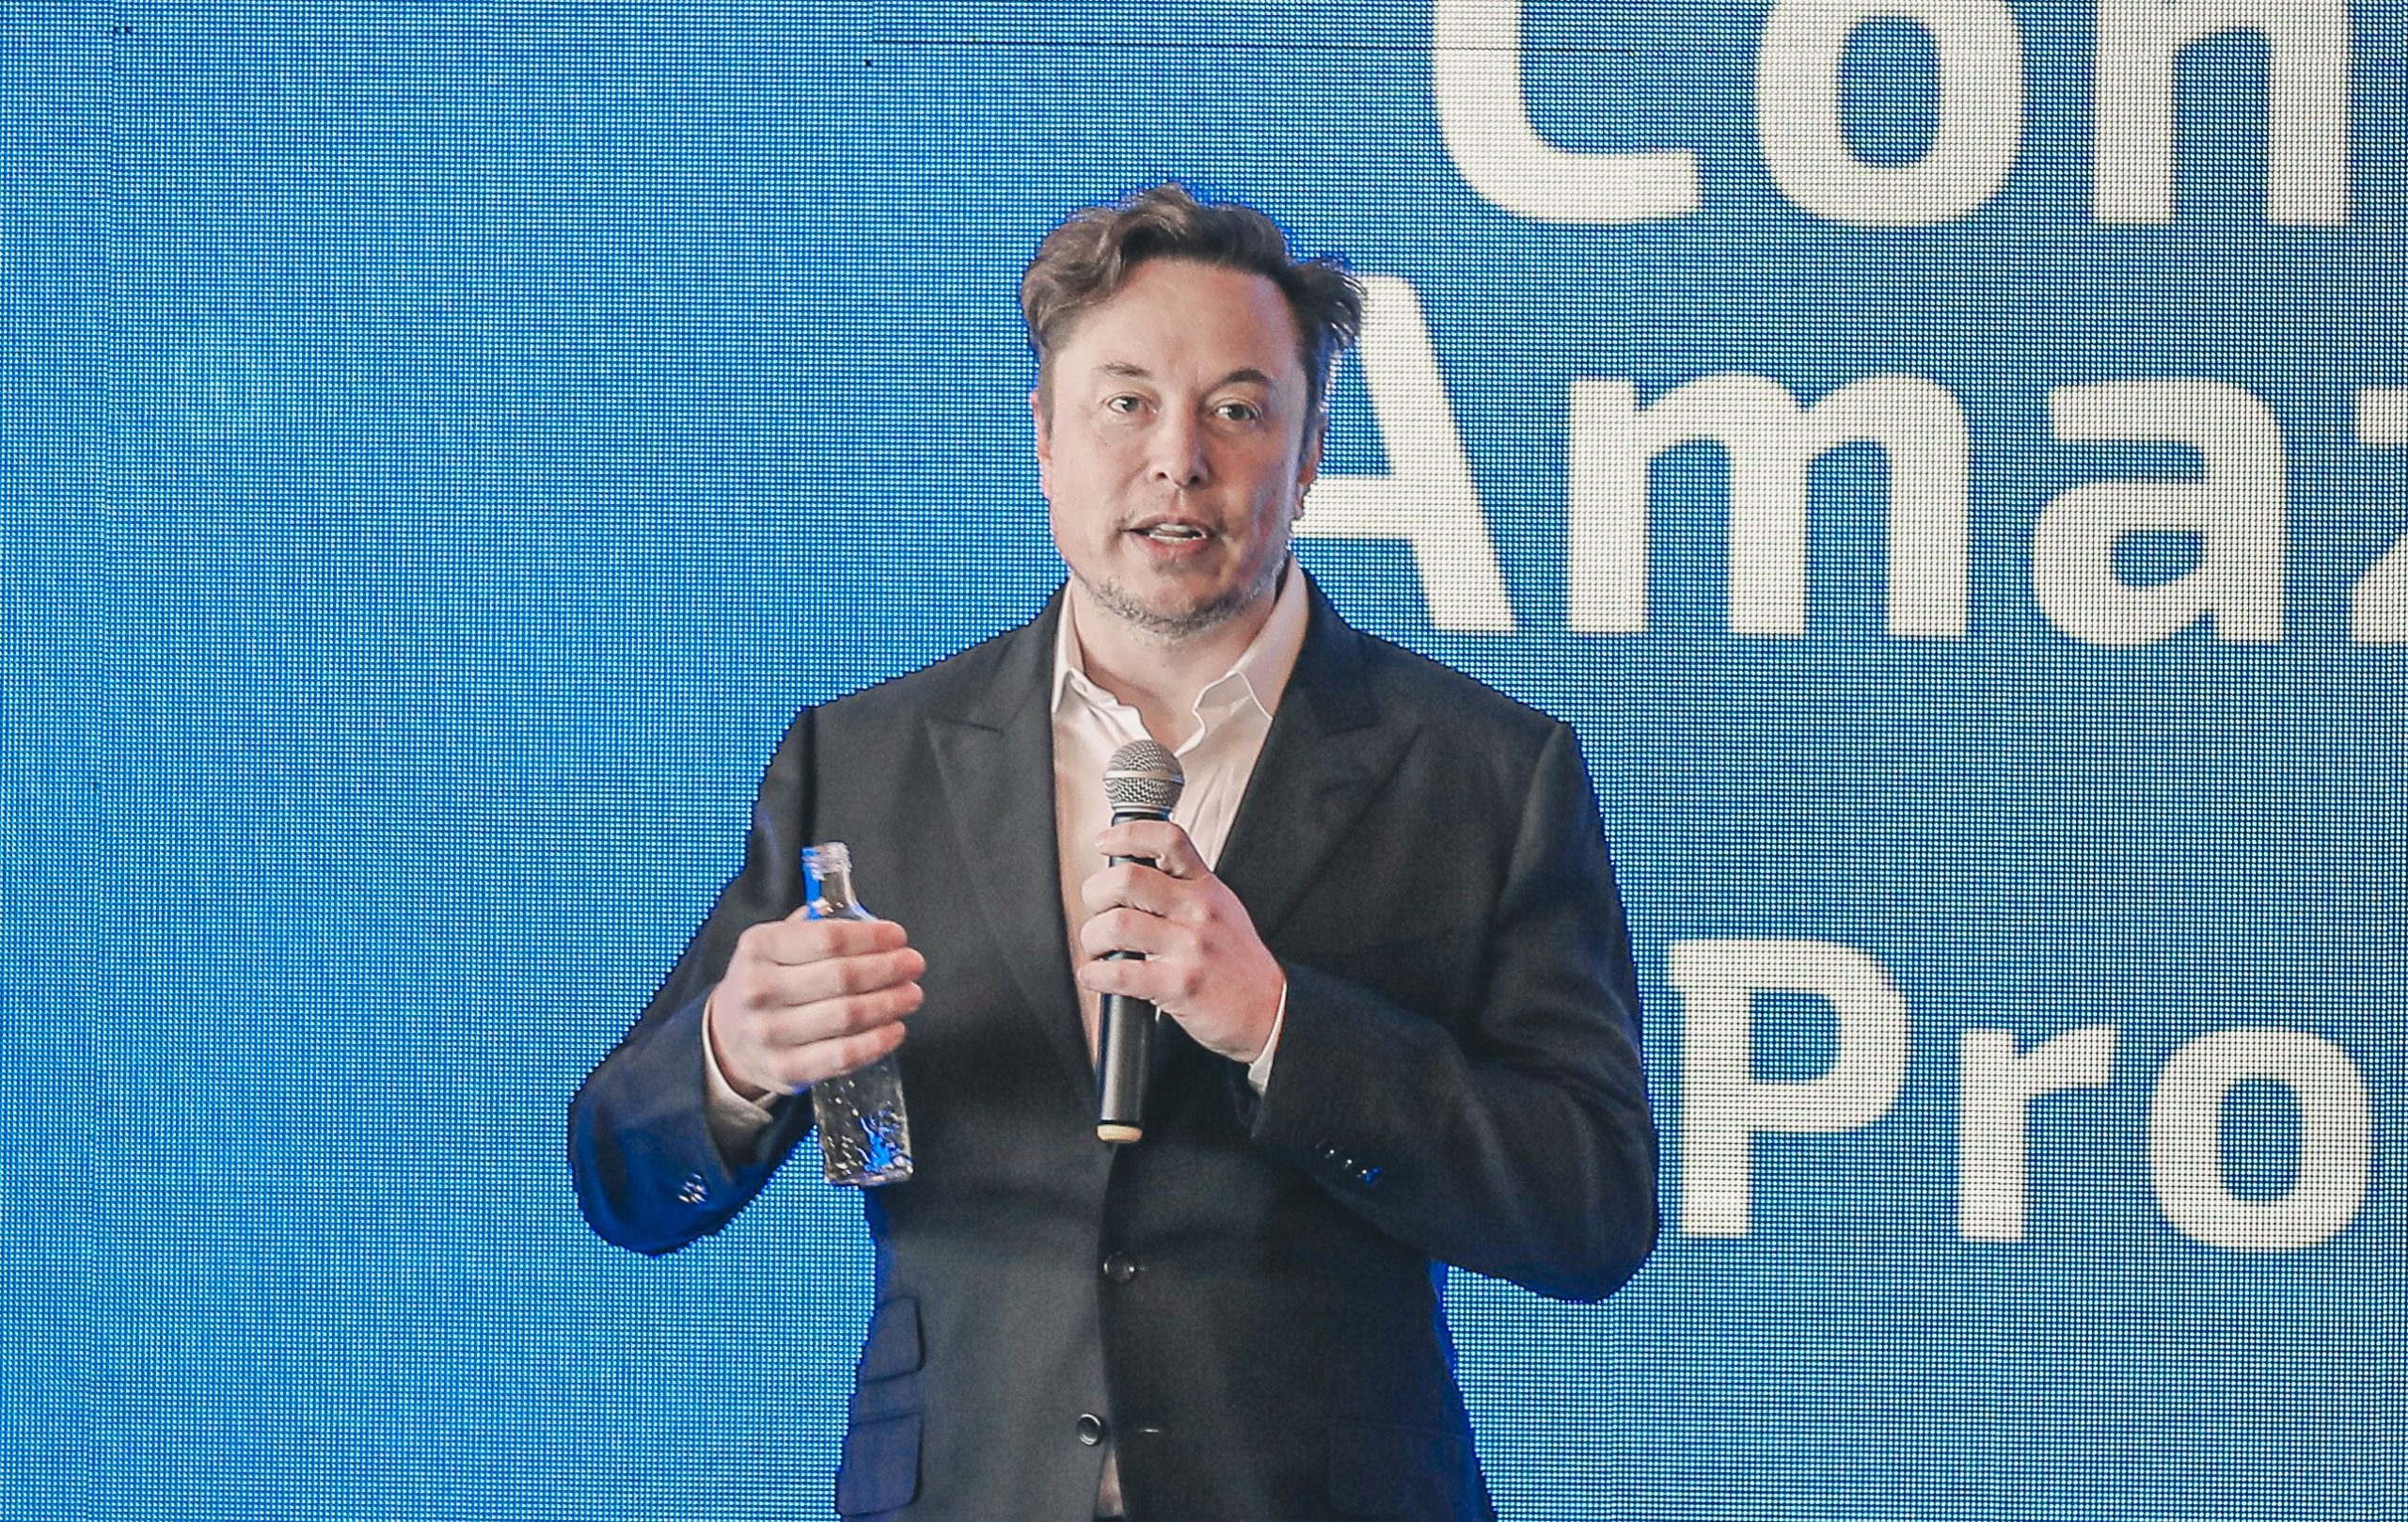 Elon Musk promette di sistemare le cose dopo che Tesla ha lasciato una piccola panetteria con un ordine non pagato